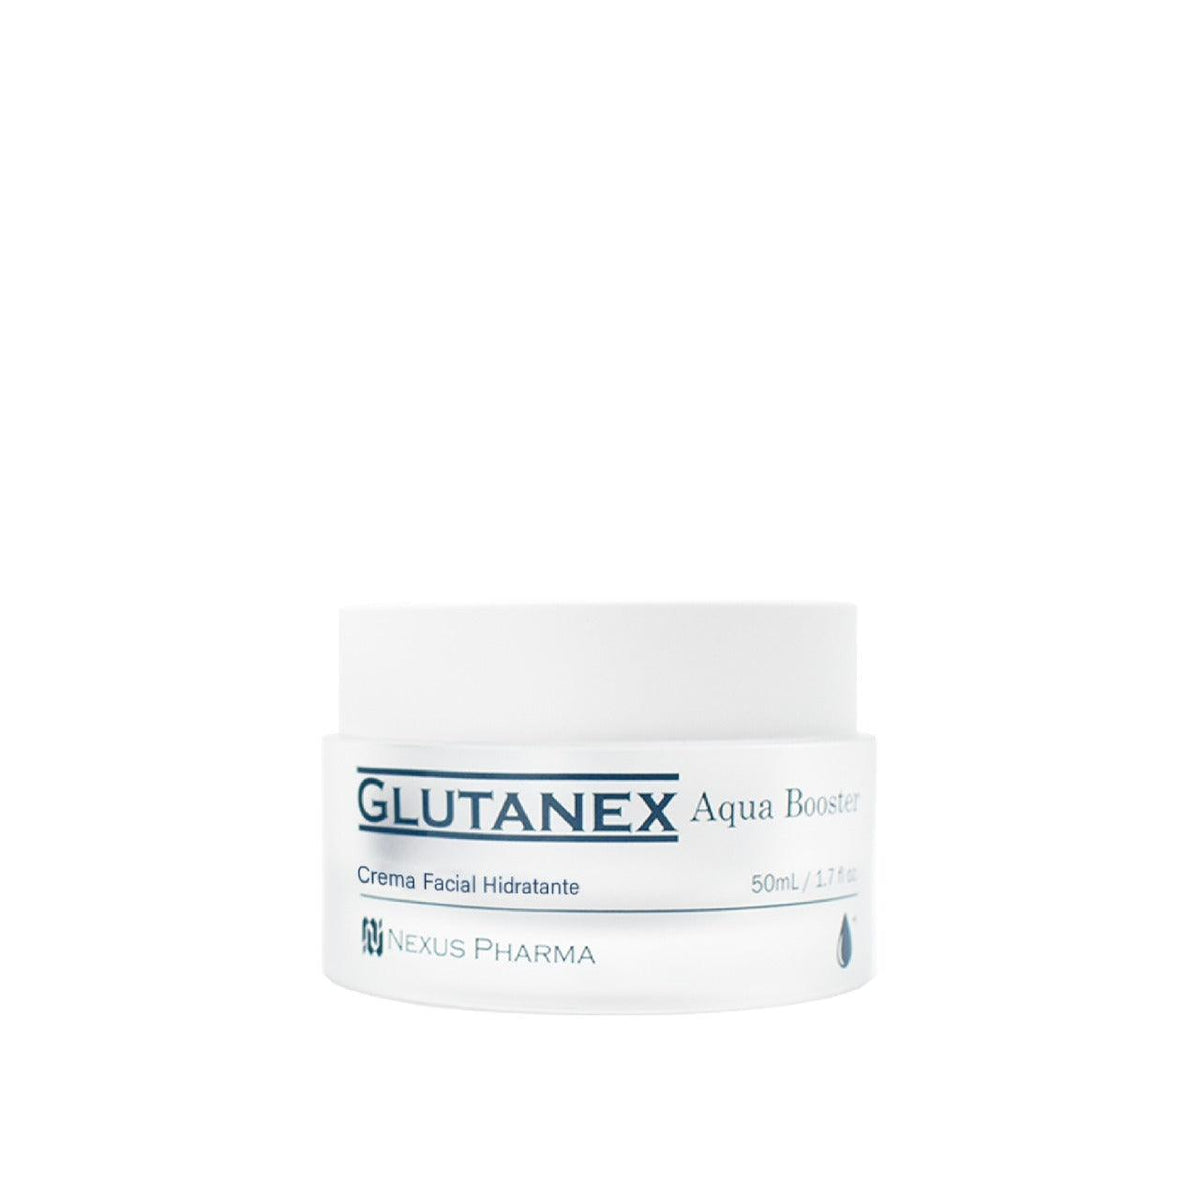 Glutanex aqua Booster